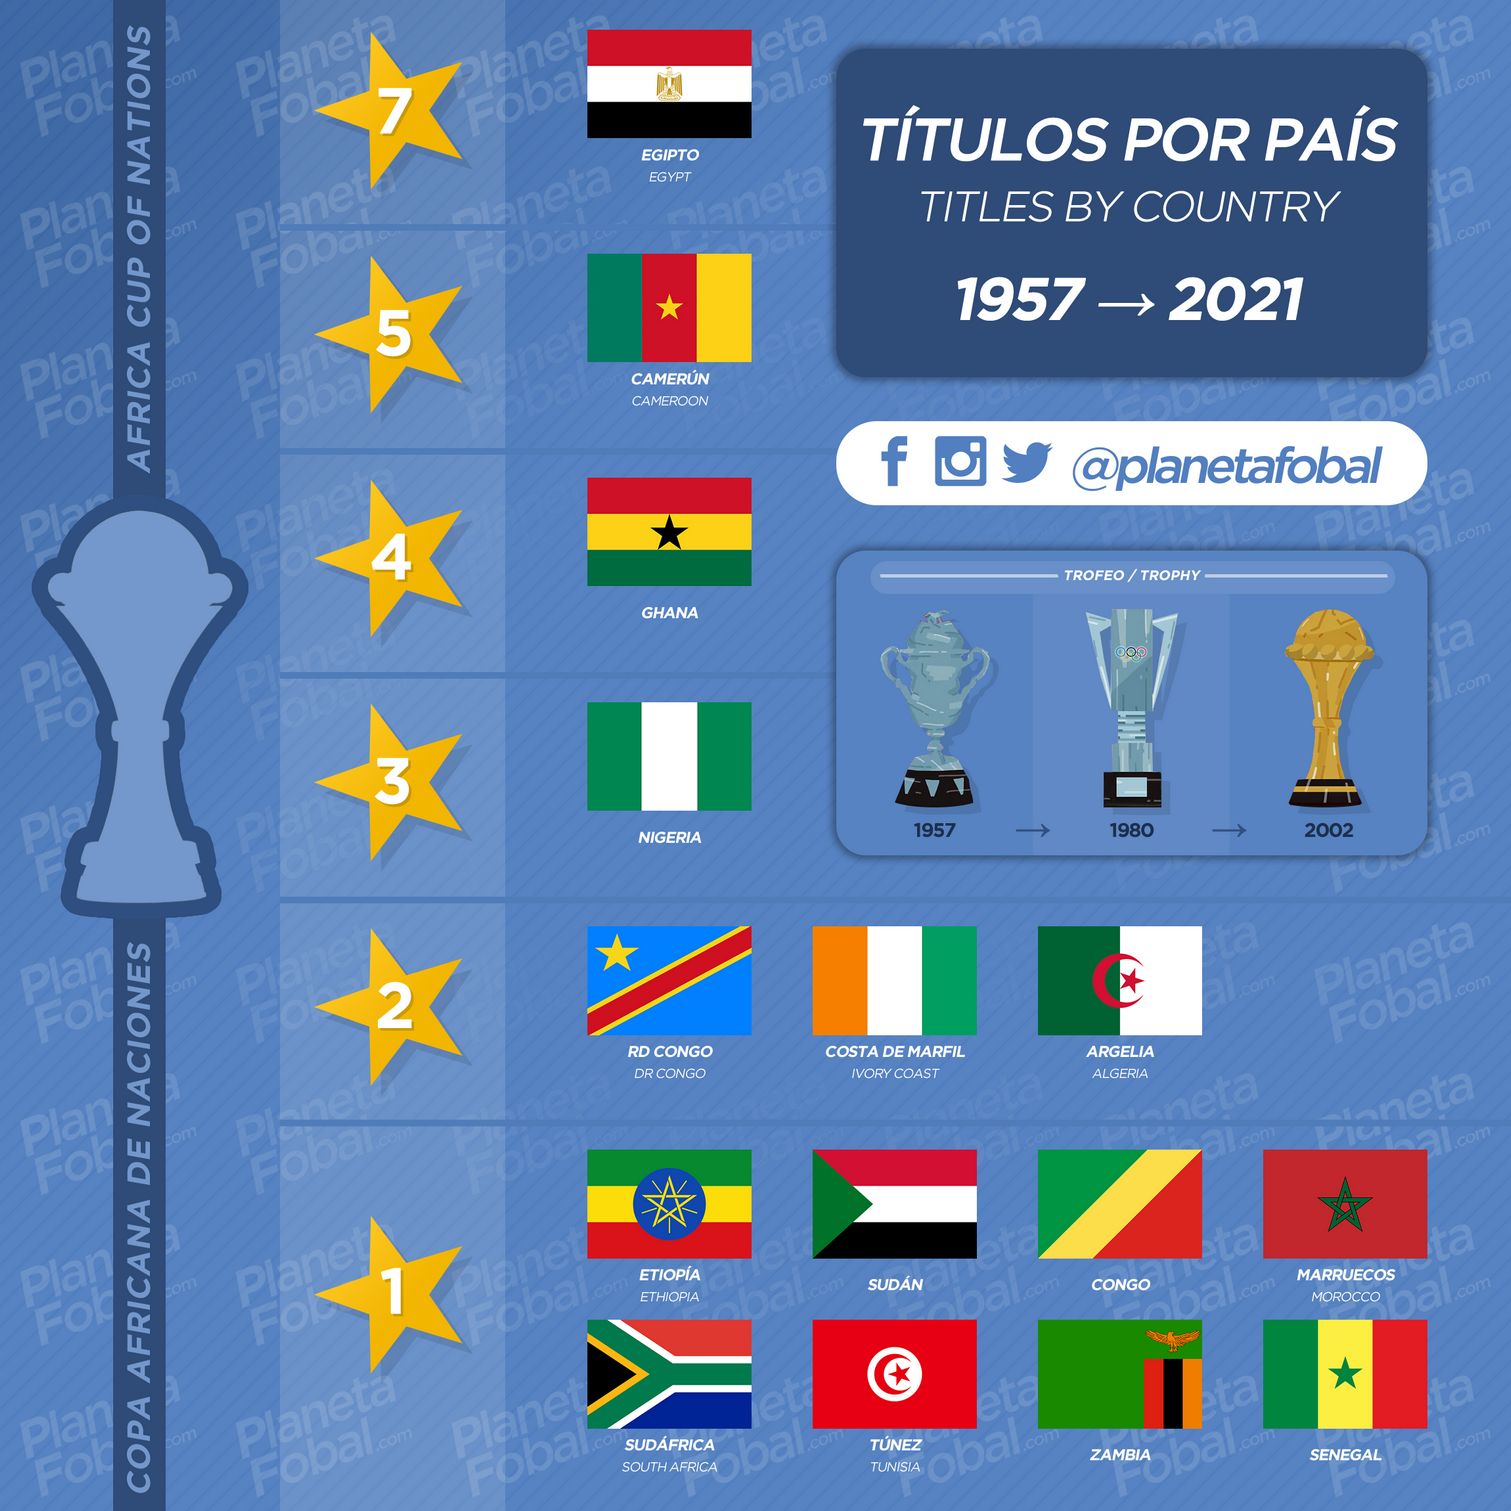 Títulos por país en la Copa Africana de Naciones (1957 → 2021)